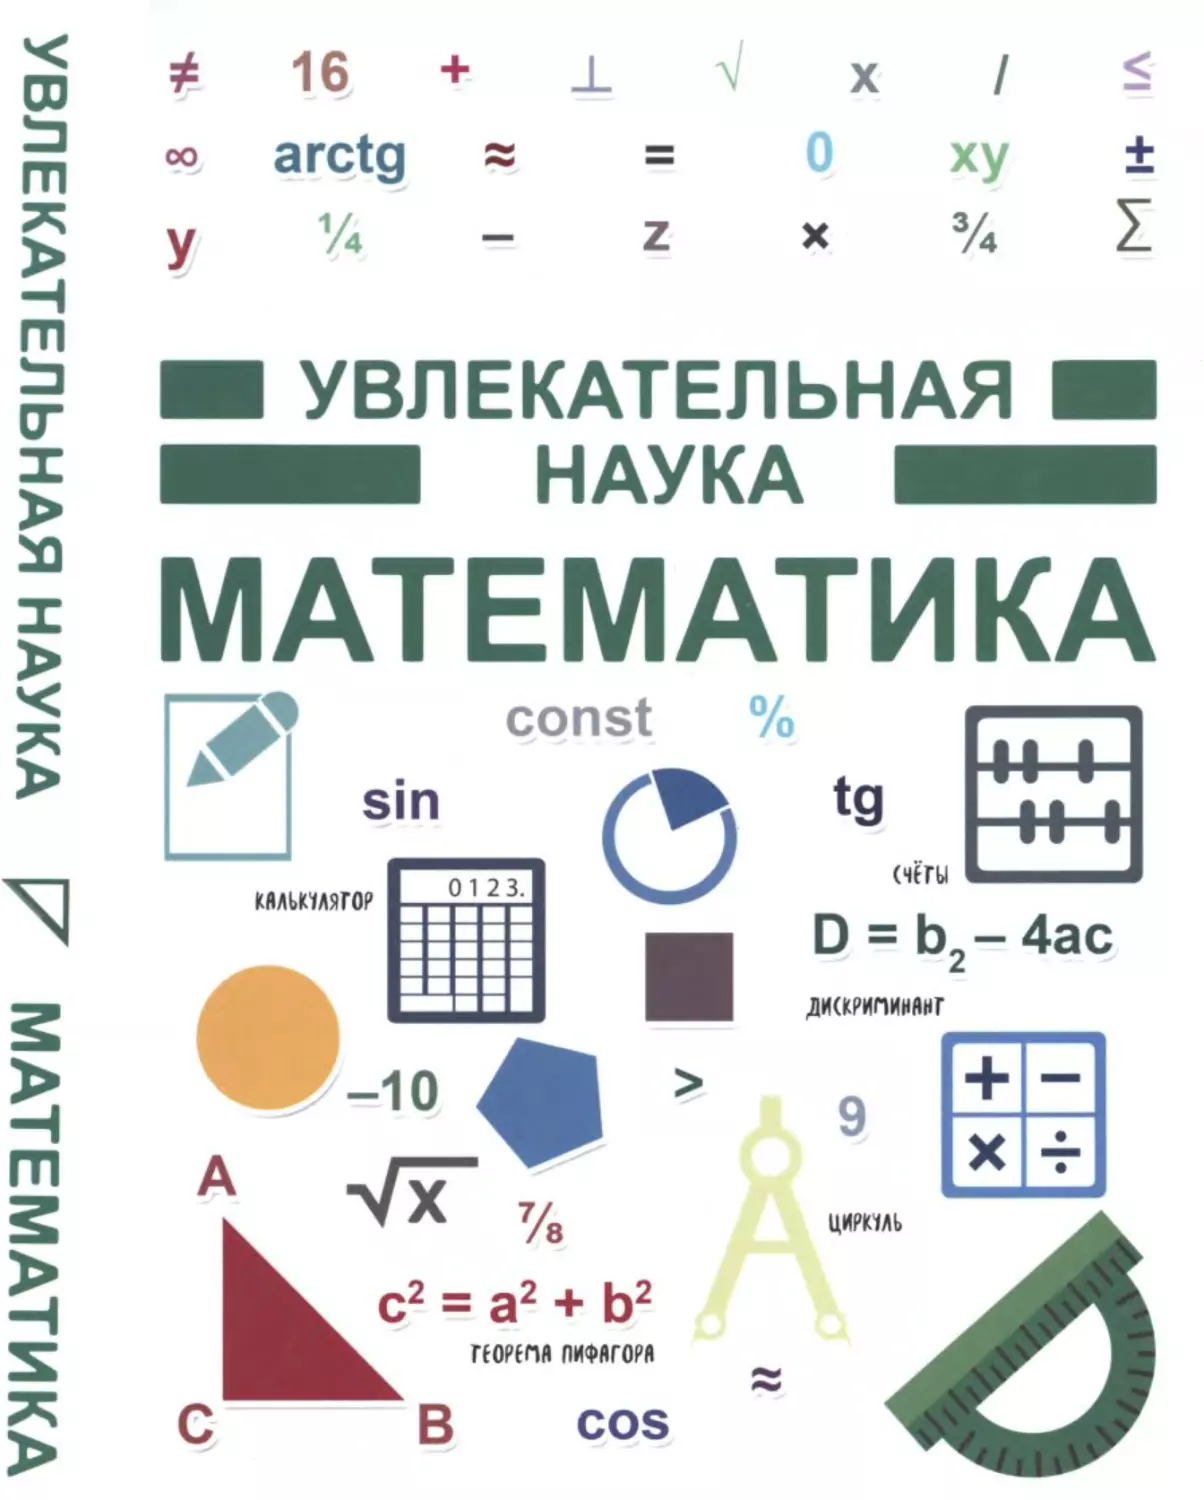 Гусев И.Е. Математика. 2017